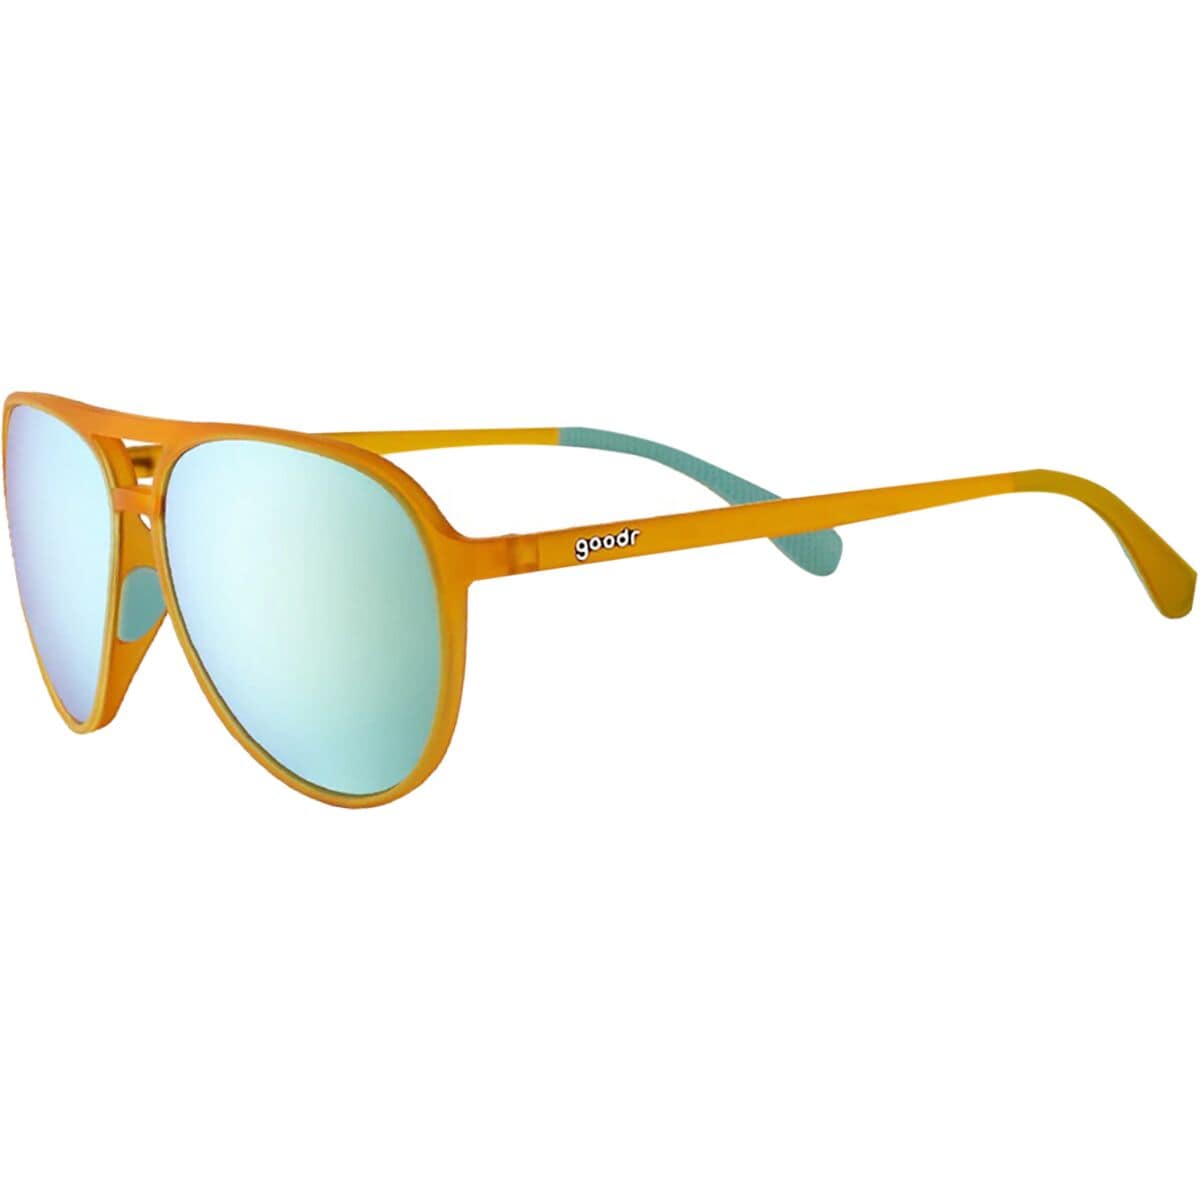 Поляризованные солнцезащитные очки Mach G для бега Goodr